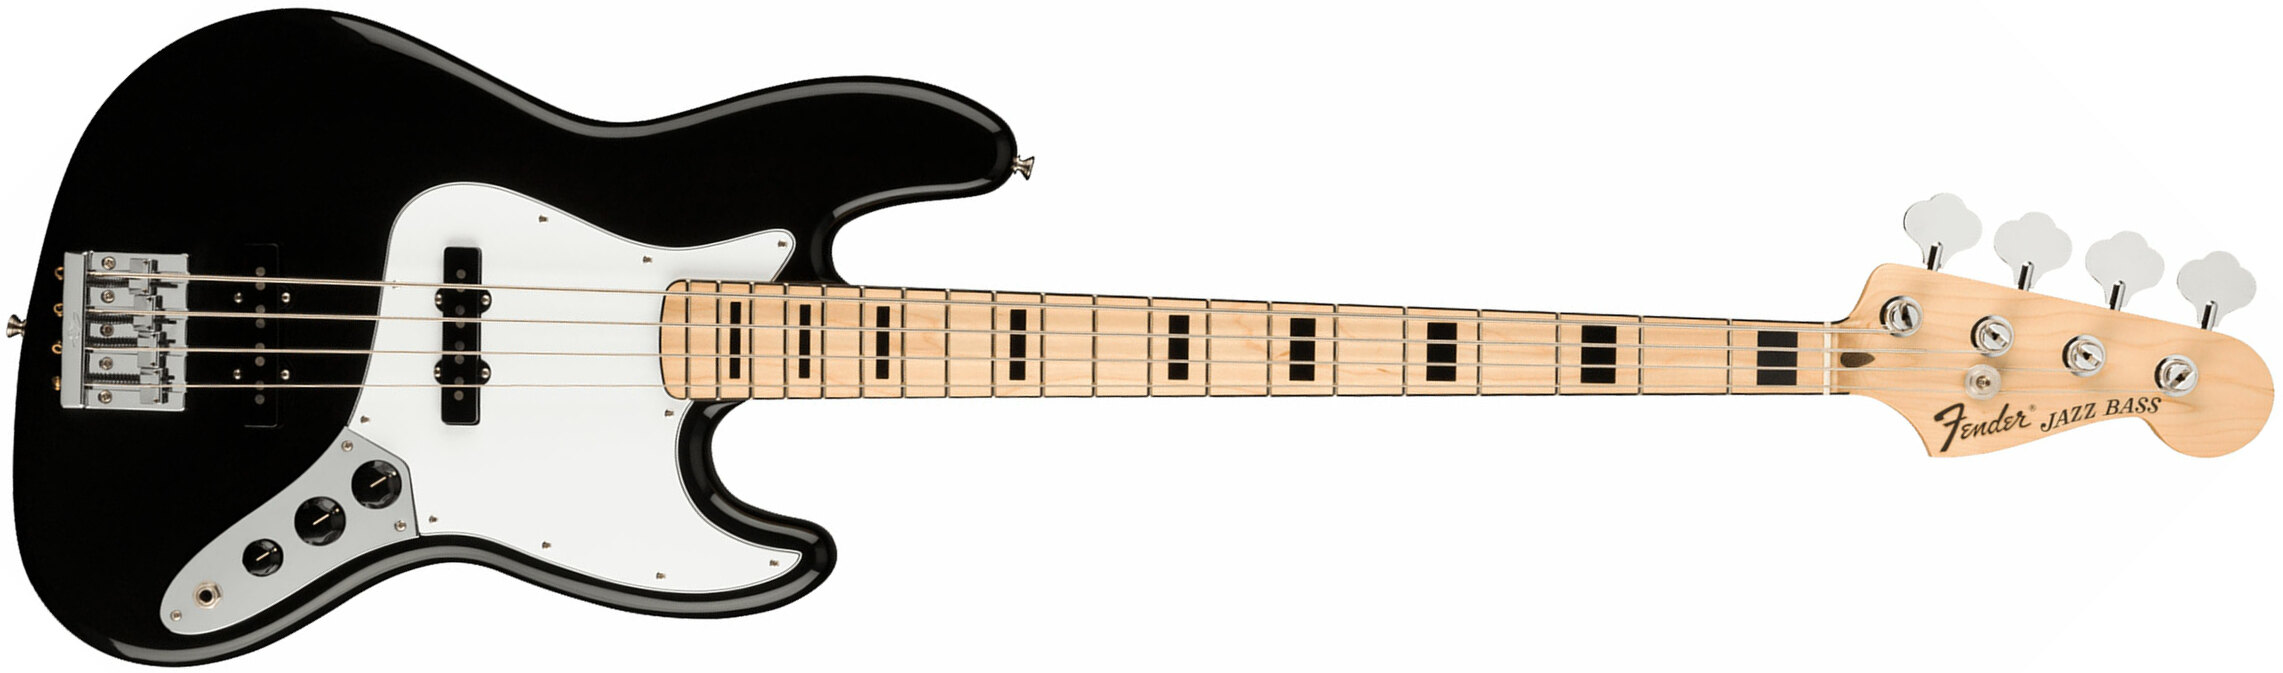 Fender Geddy Lee Jazz Bass Signature Mex Mn - Black - Solid body elektrische bas - Main picture